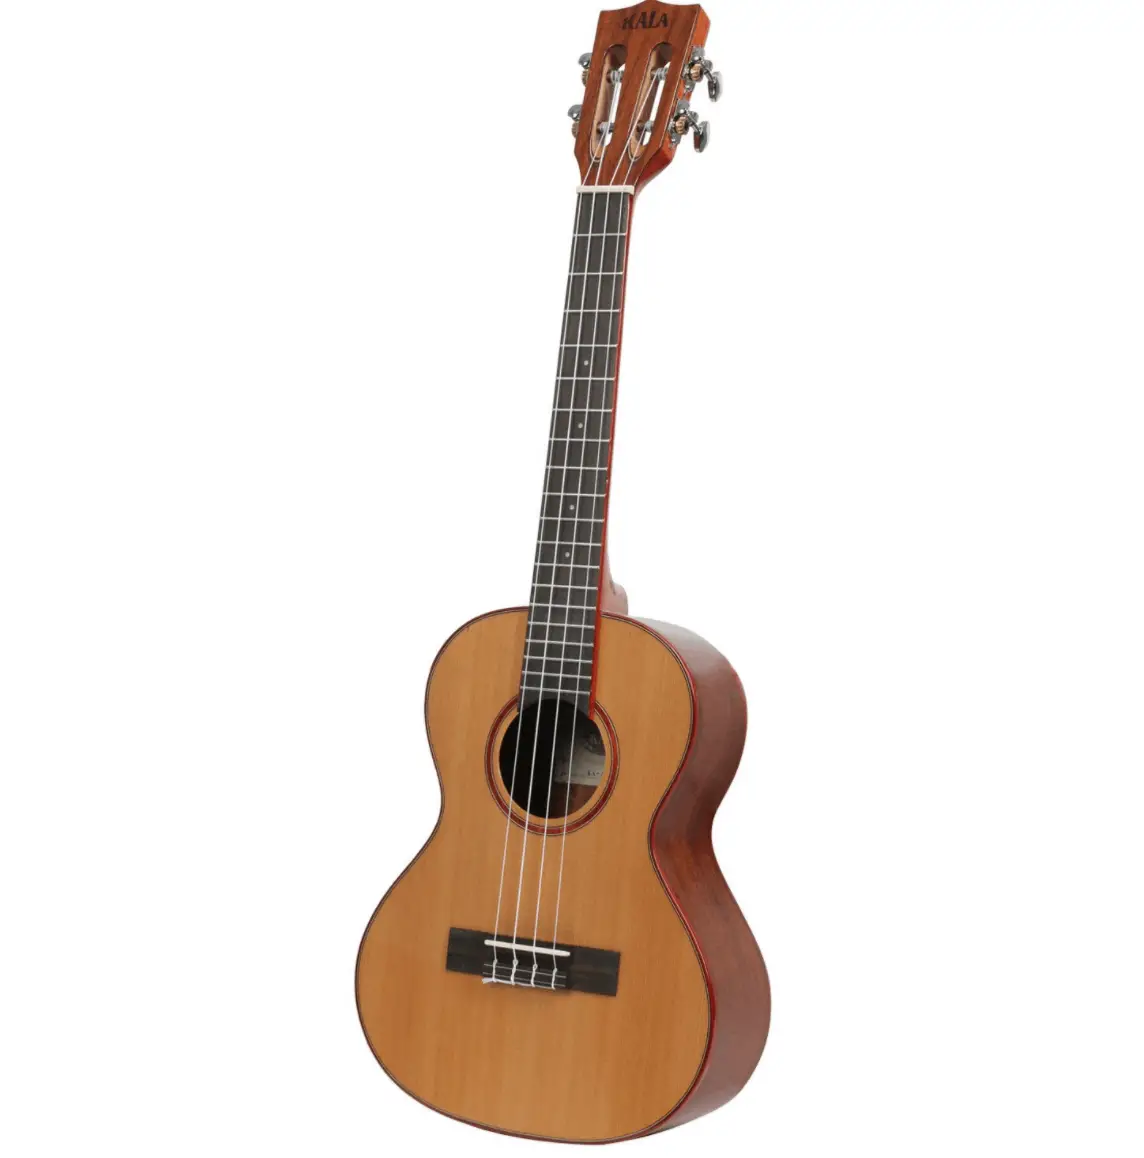 Mafi kyawun ukulele don ƙwararru & mafi kyau a ƙarƙashin $ 500: Kala Solid Cedar Acacia